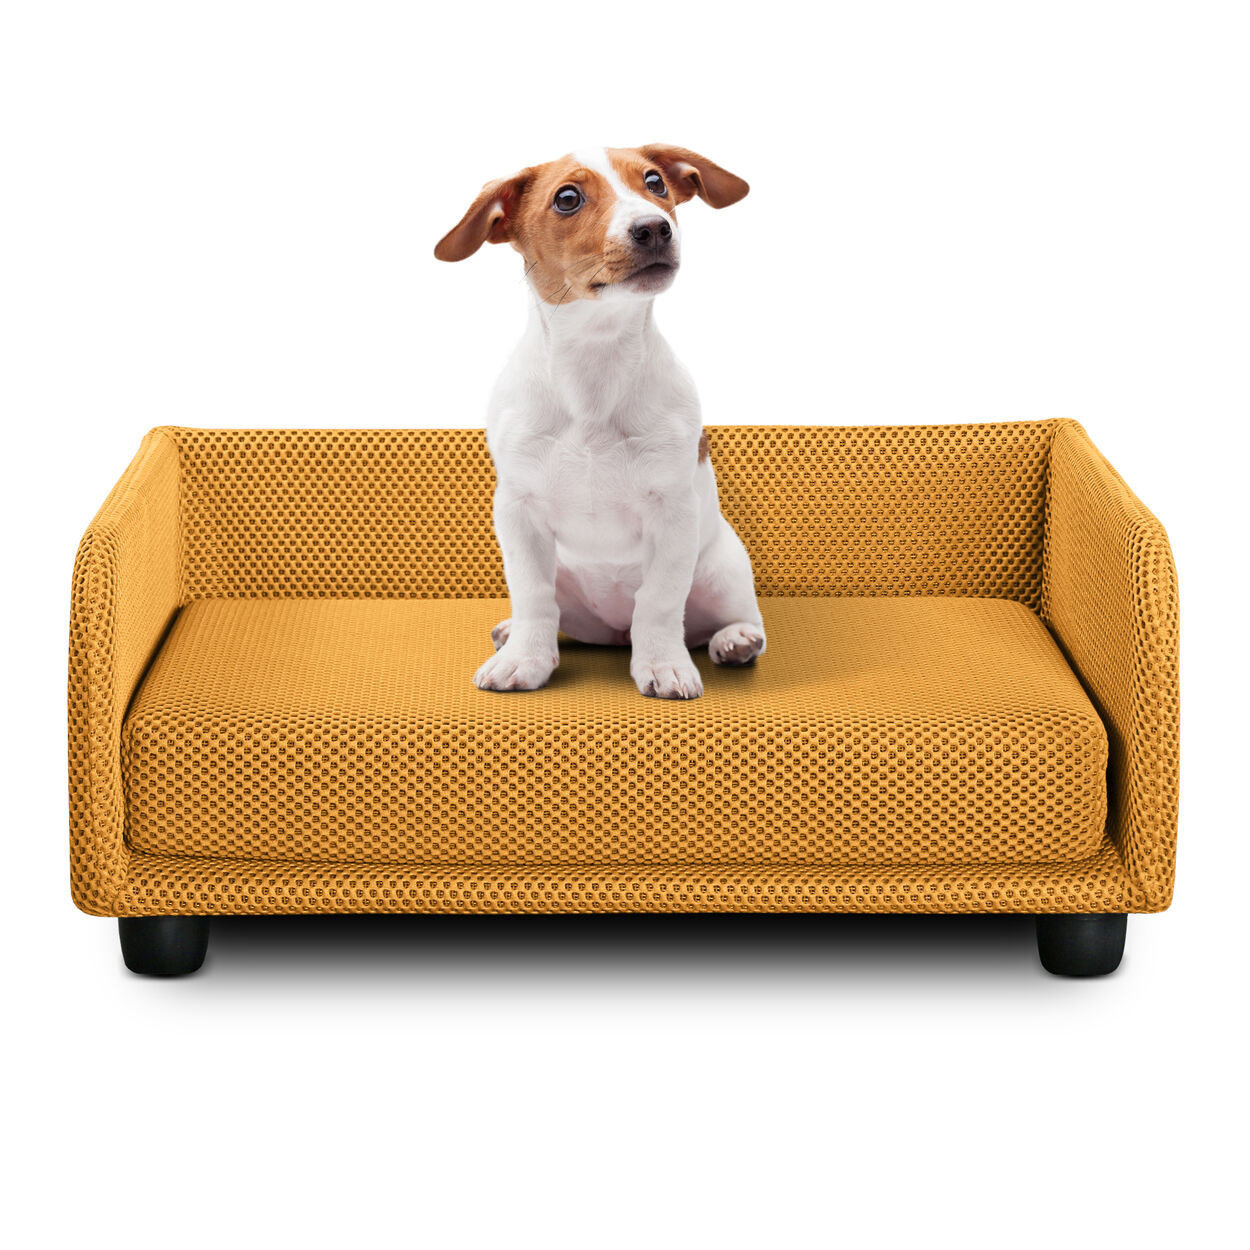 evergreenweb cuccia per cani divano letto king dog home 70x90 giallo